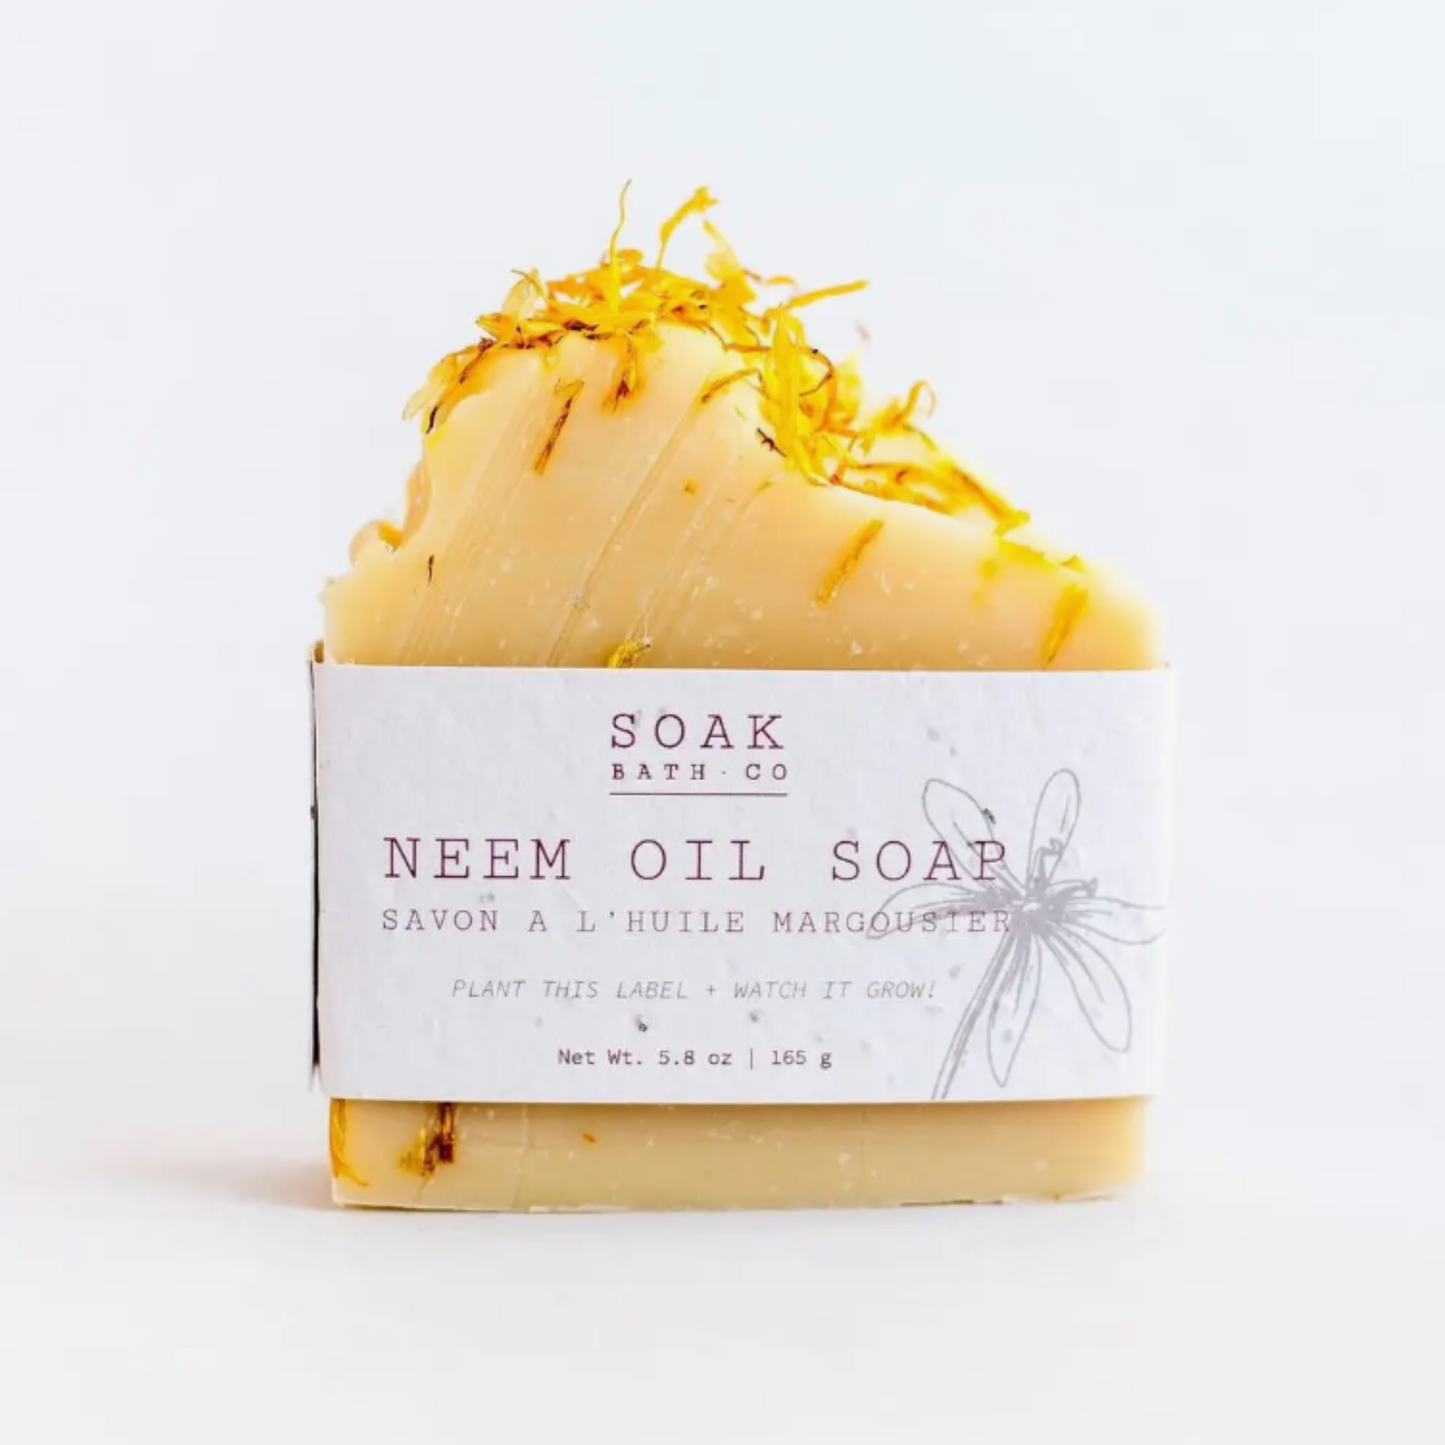 Neem Oil Soap - Plantable Label